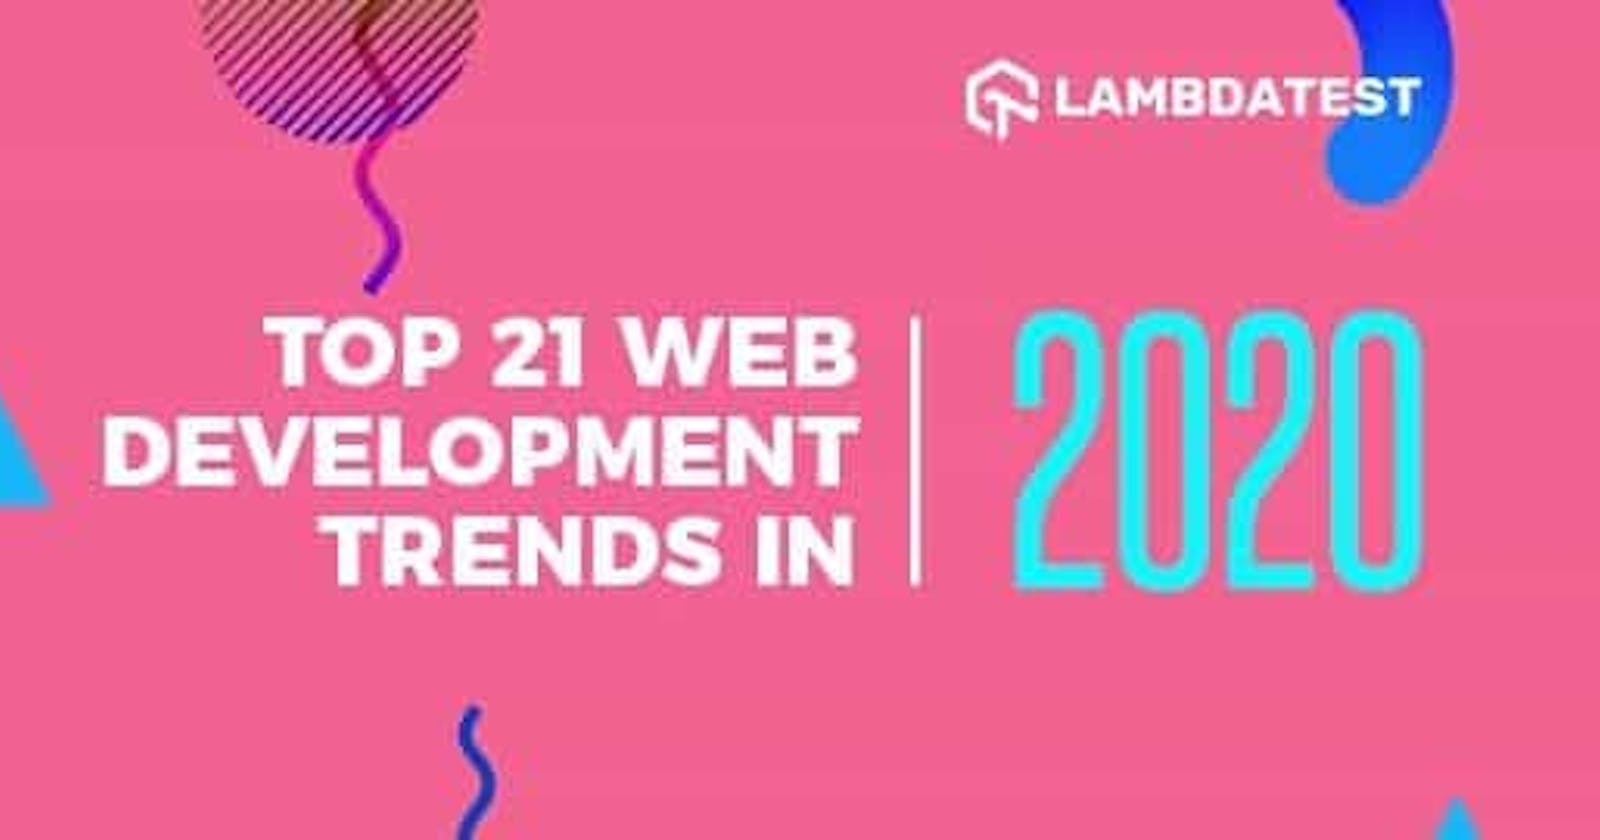 Top 21 Web Development Trends In 2020